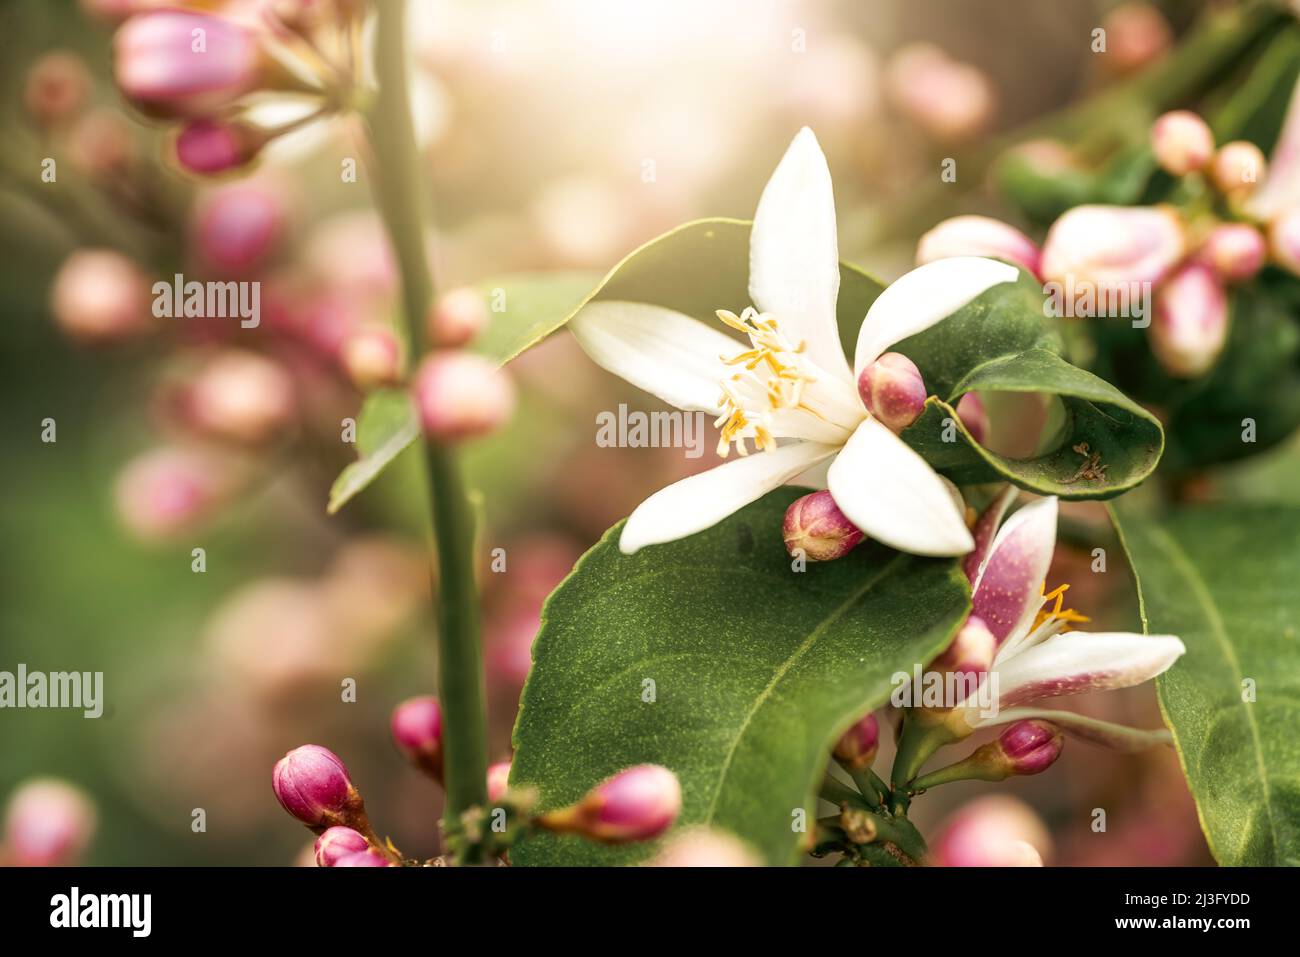 Macro fotografia di primo piano, fiori di agrumi rosa e bianco. Foto di alta qualità Foto Stock